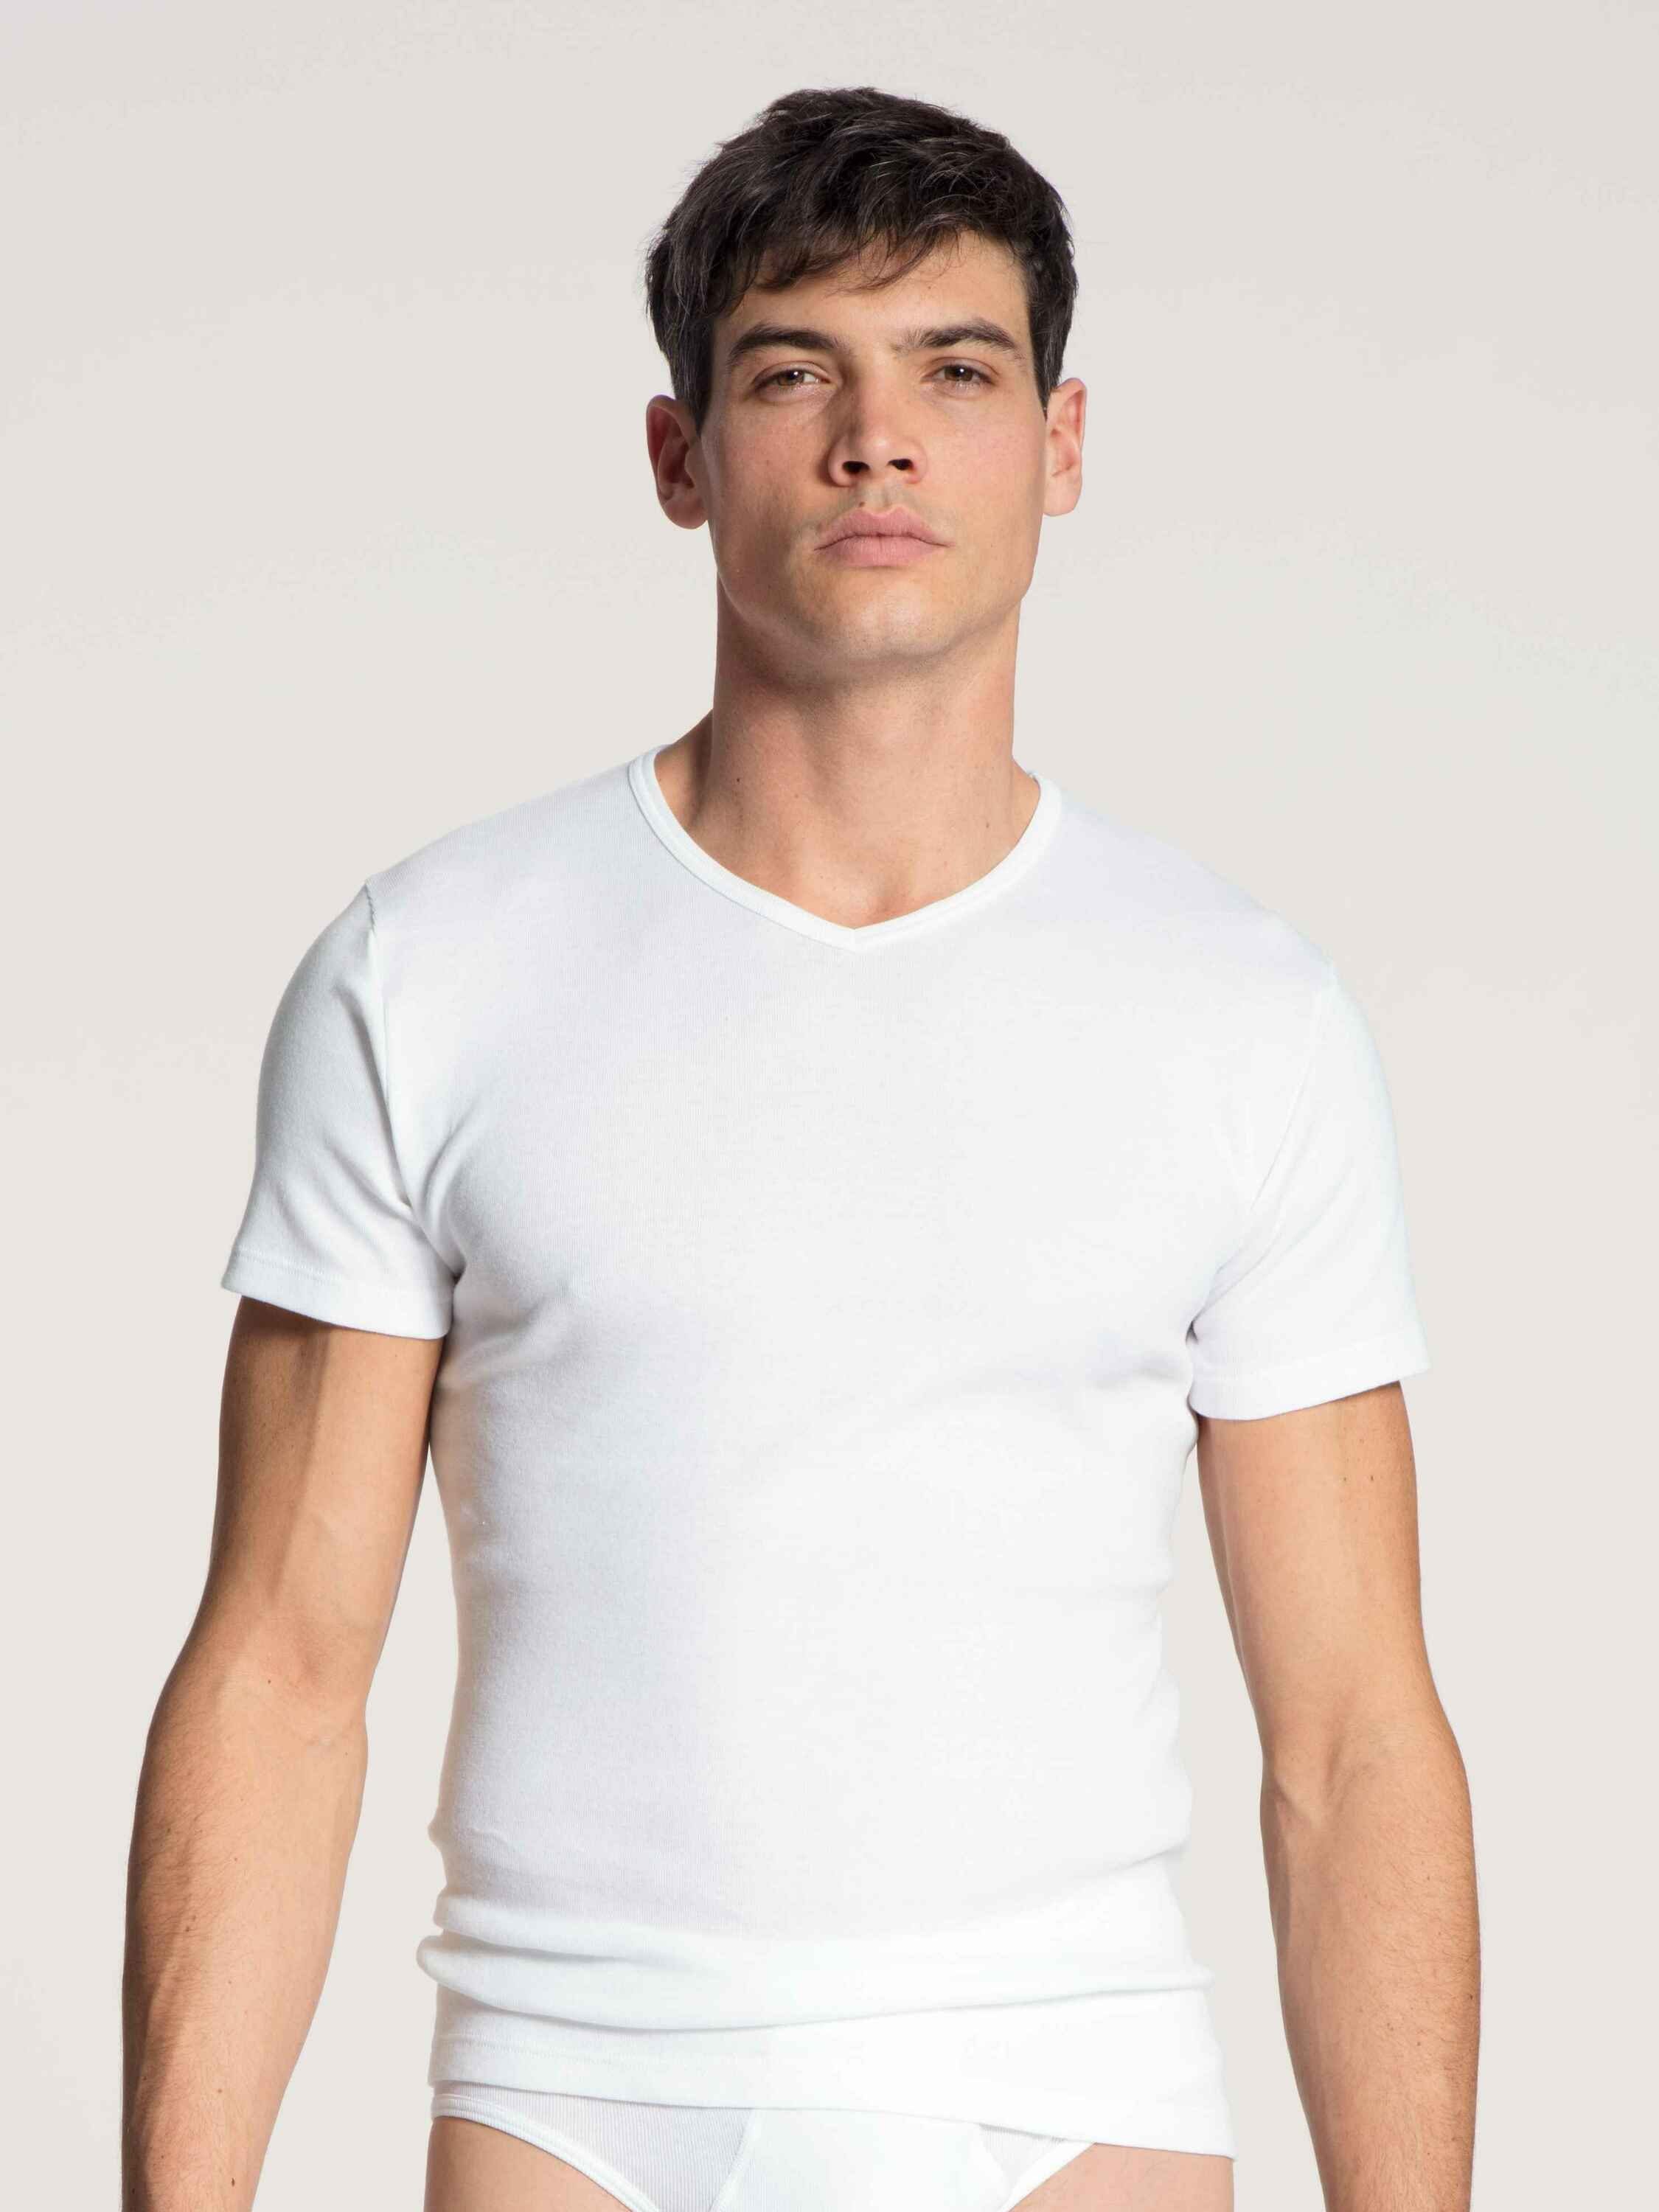 Wäsche/Bademode Unterhemden CALIDA Unterziehshirt T-Shirt (1 Stück)